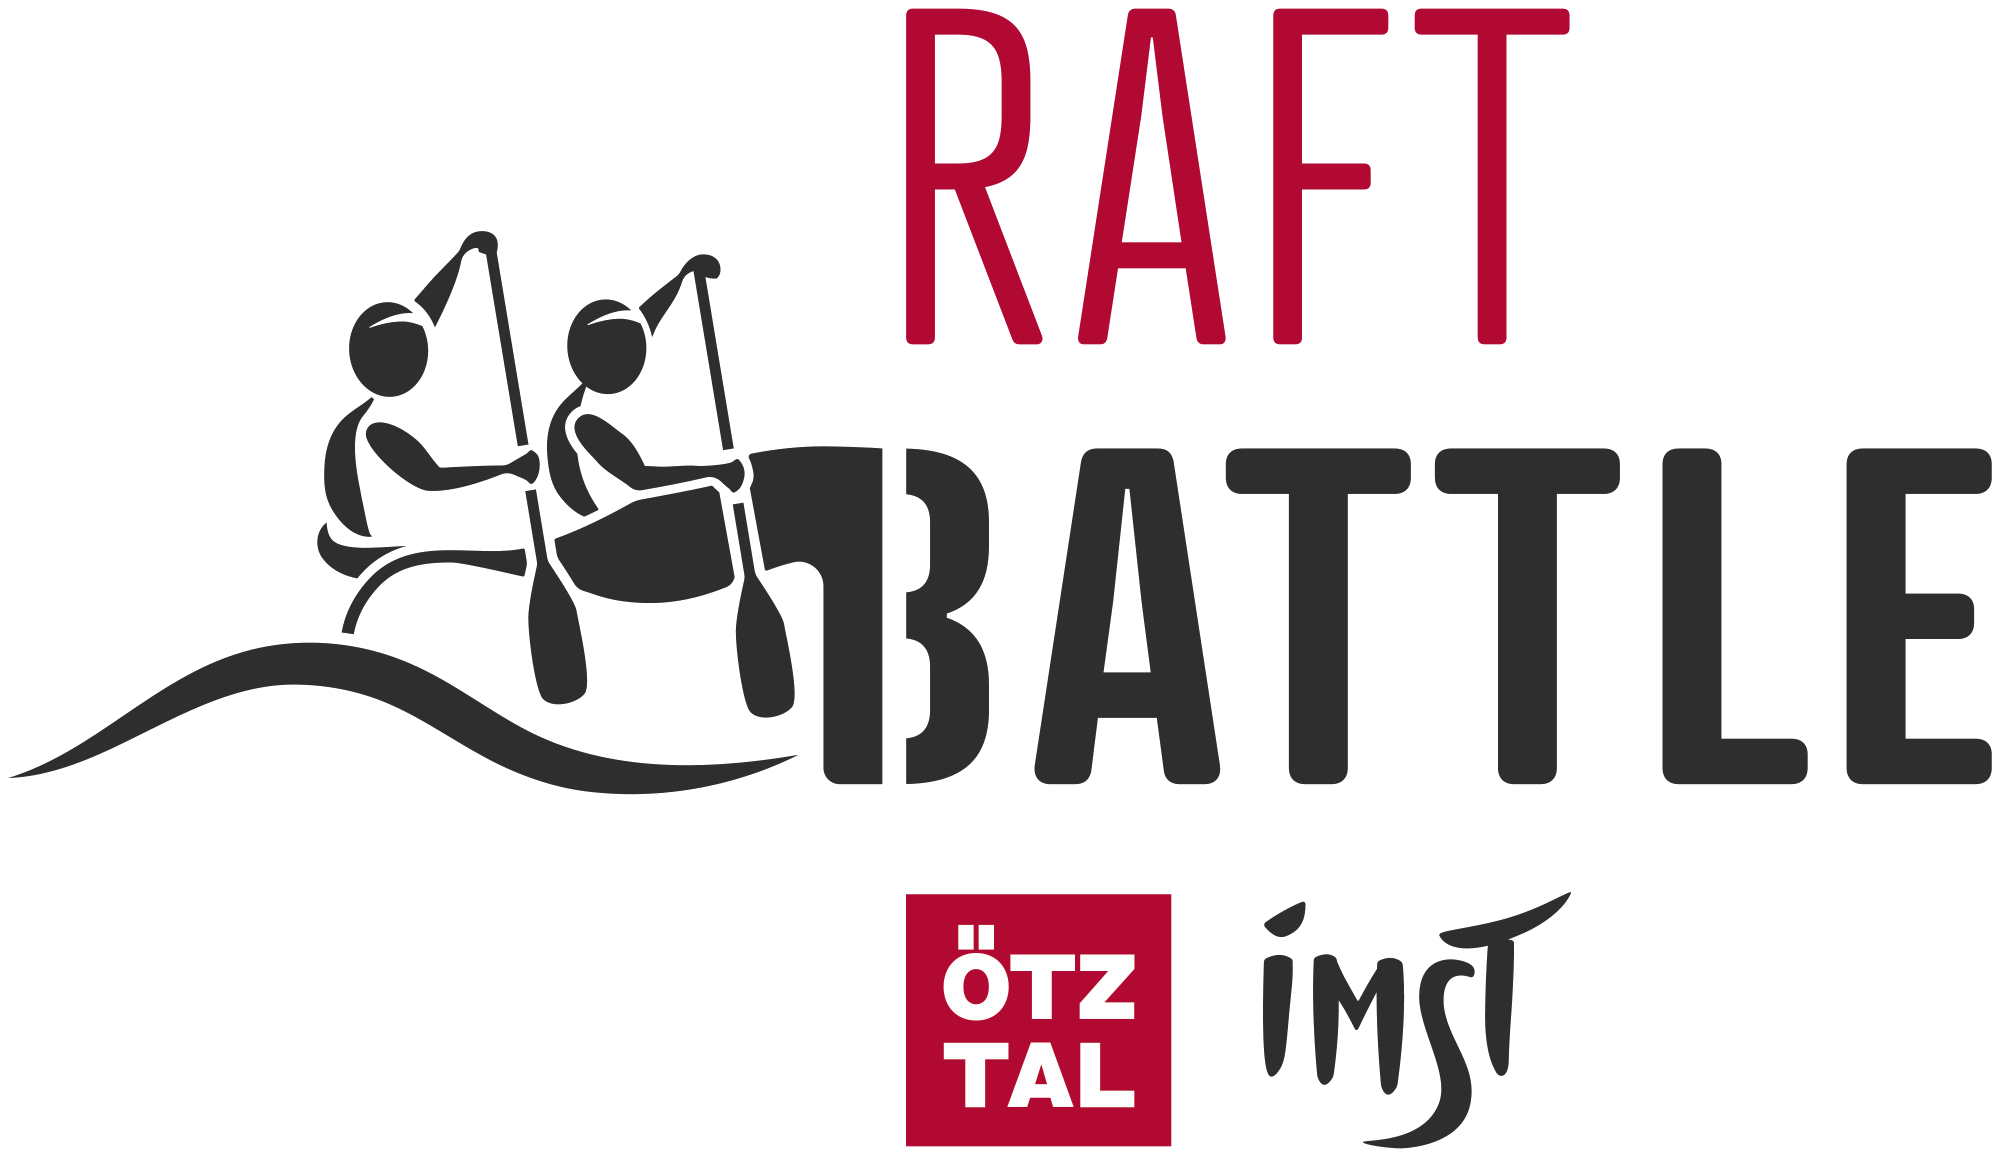 Raft Battle